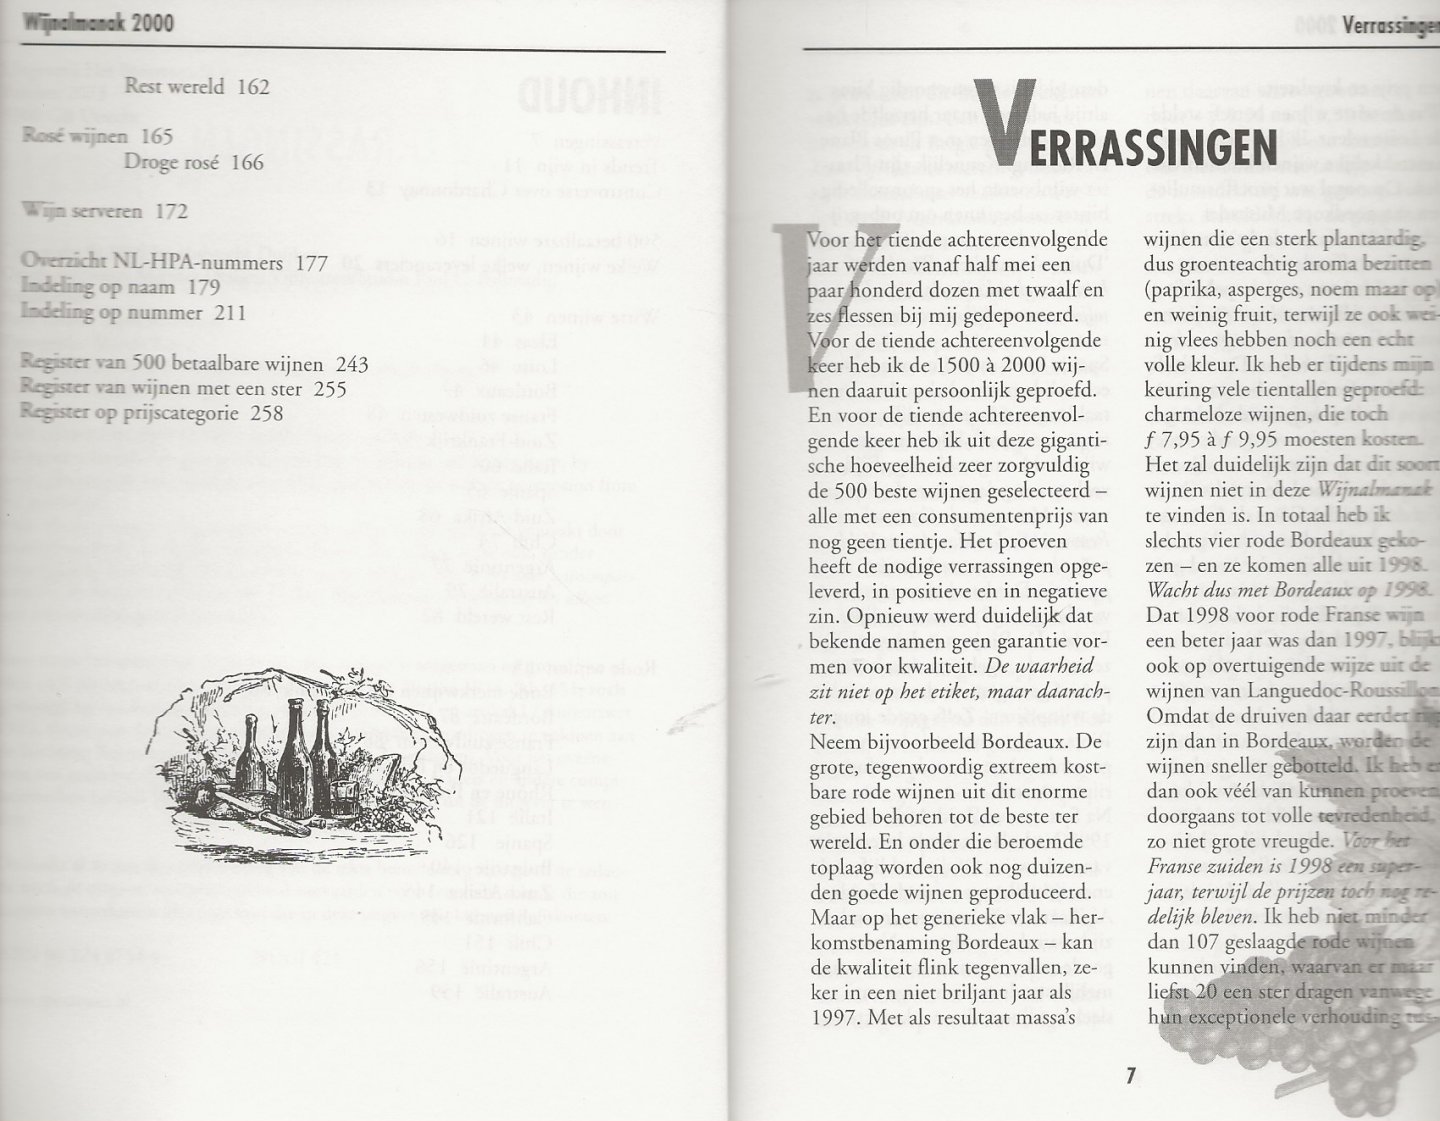 Duijker, Hubrecht . Foto auteur Sjaak Ramakers  Typografie Martien Luys - Wijnalmanak 2000